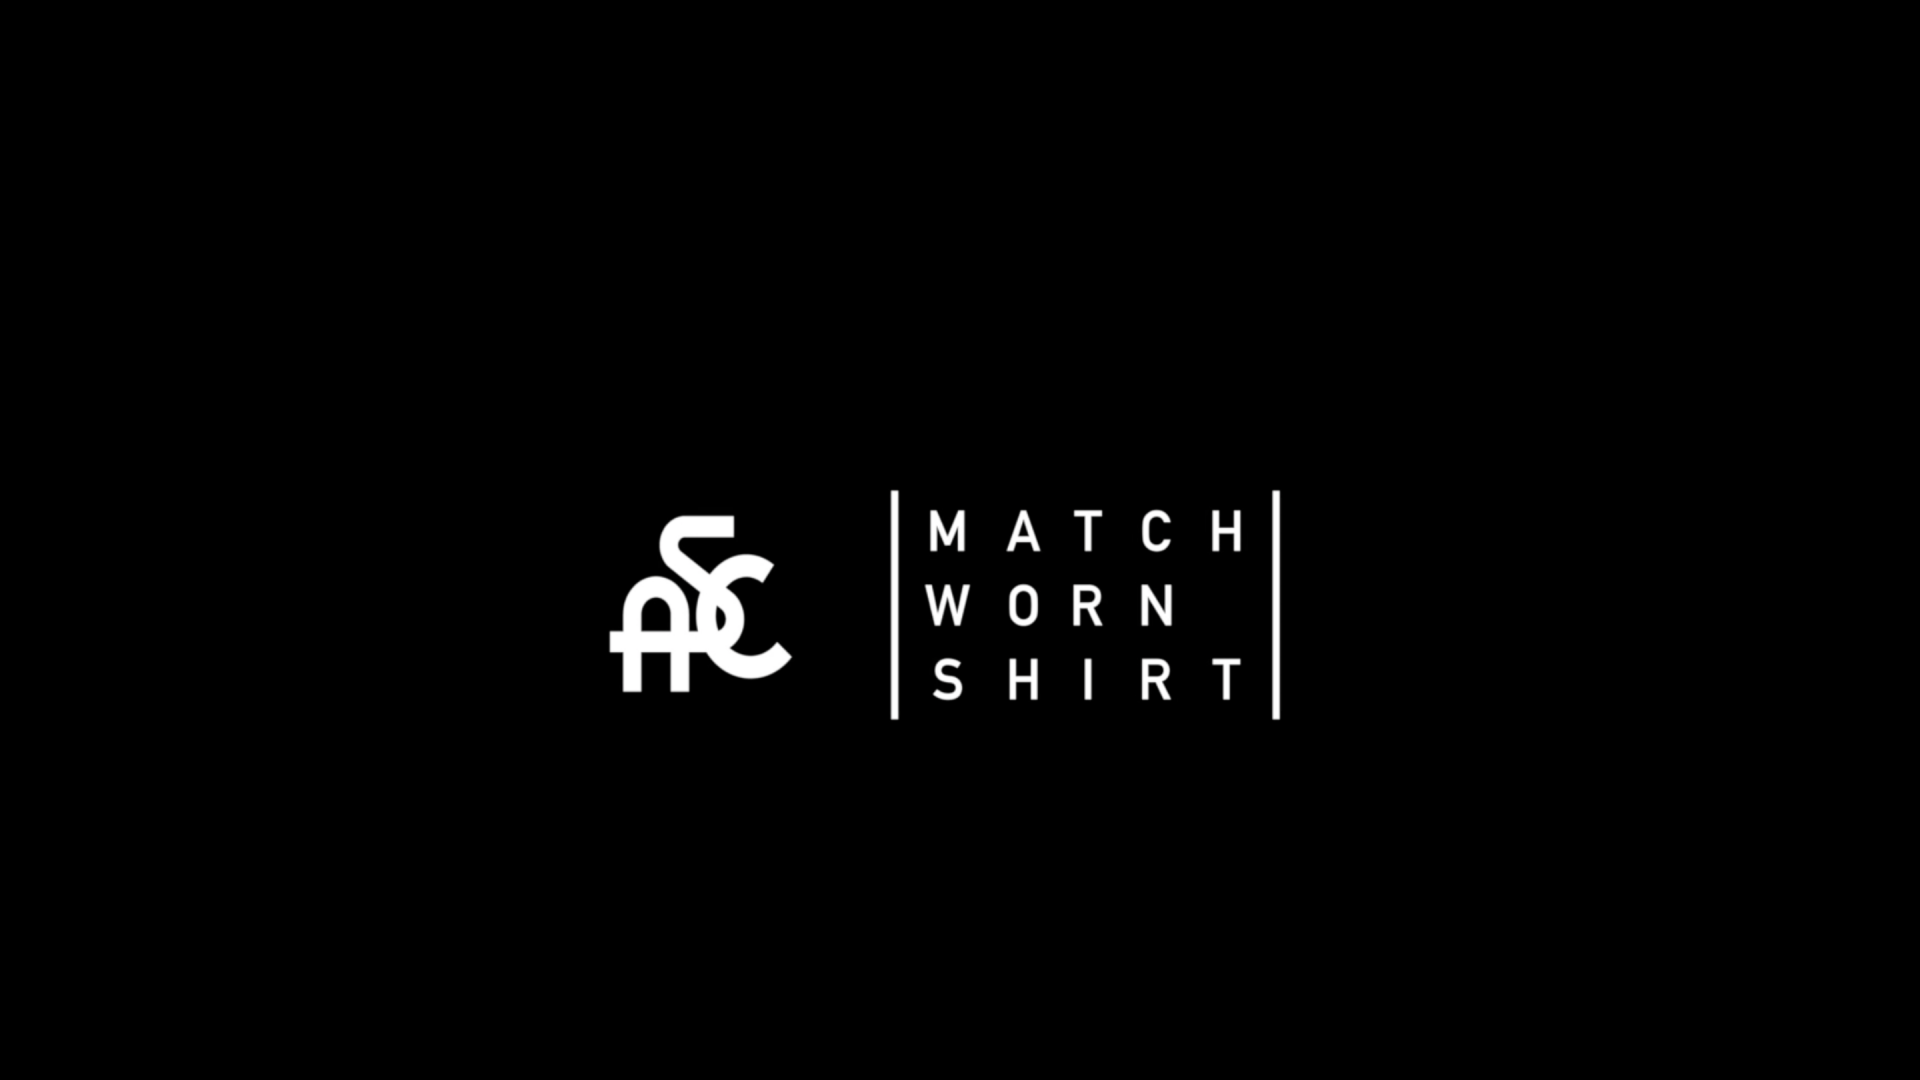 Spezia Calcio e MatchWornShirt: avviata la nuova partnership